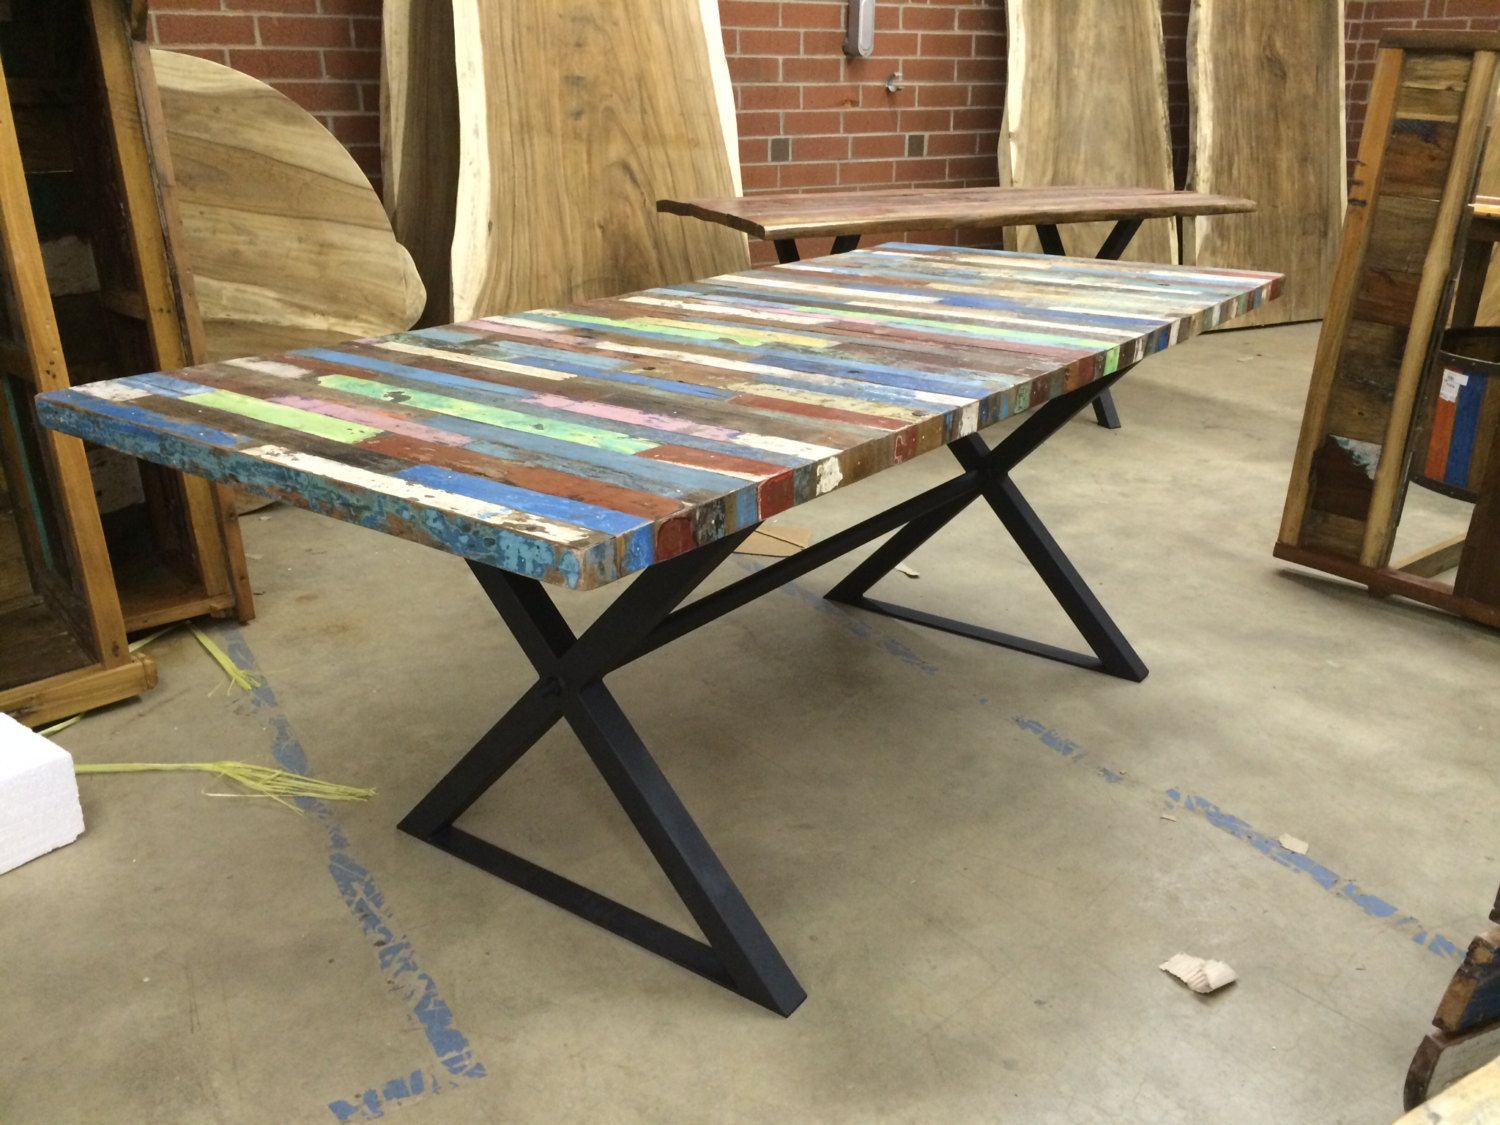 Reclaimed Teak Wood Table Tops